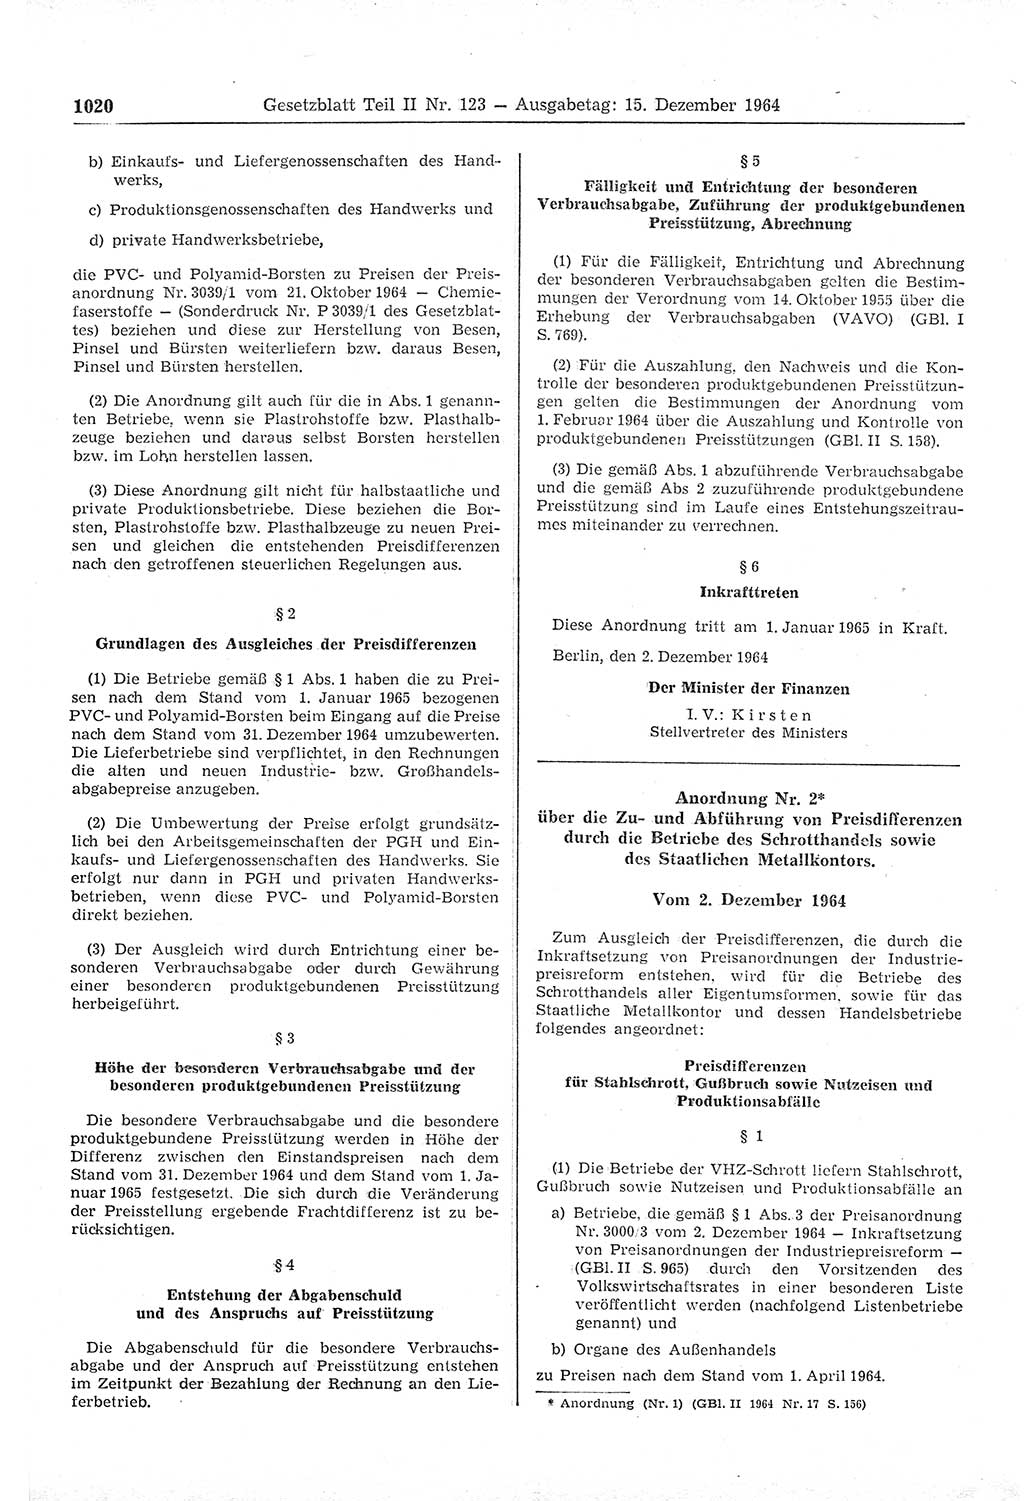 Gesetzblatt (GBl.) der Deutschen Demokratischen Republik (DDR) Teil ⅠⅠ 1964, Seite 1020 (GBl. DDR ⅠⅠ 1964, S. 1020)